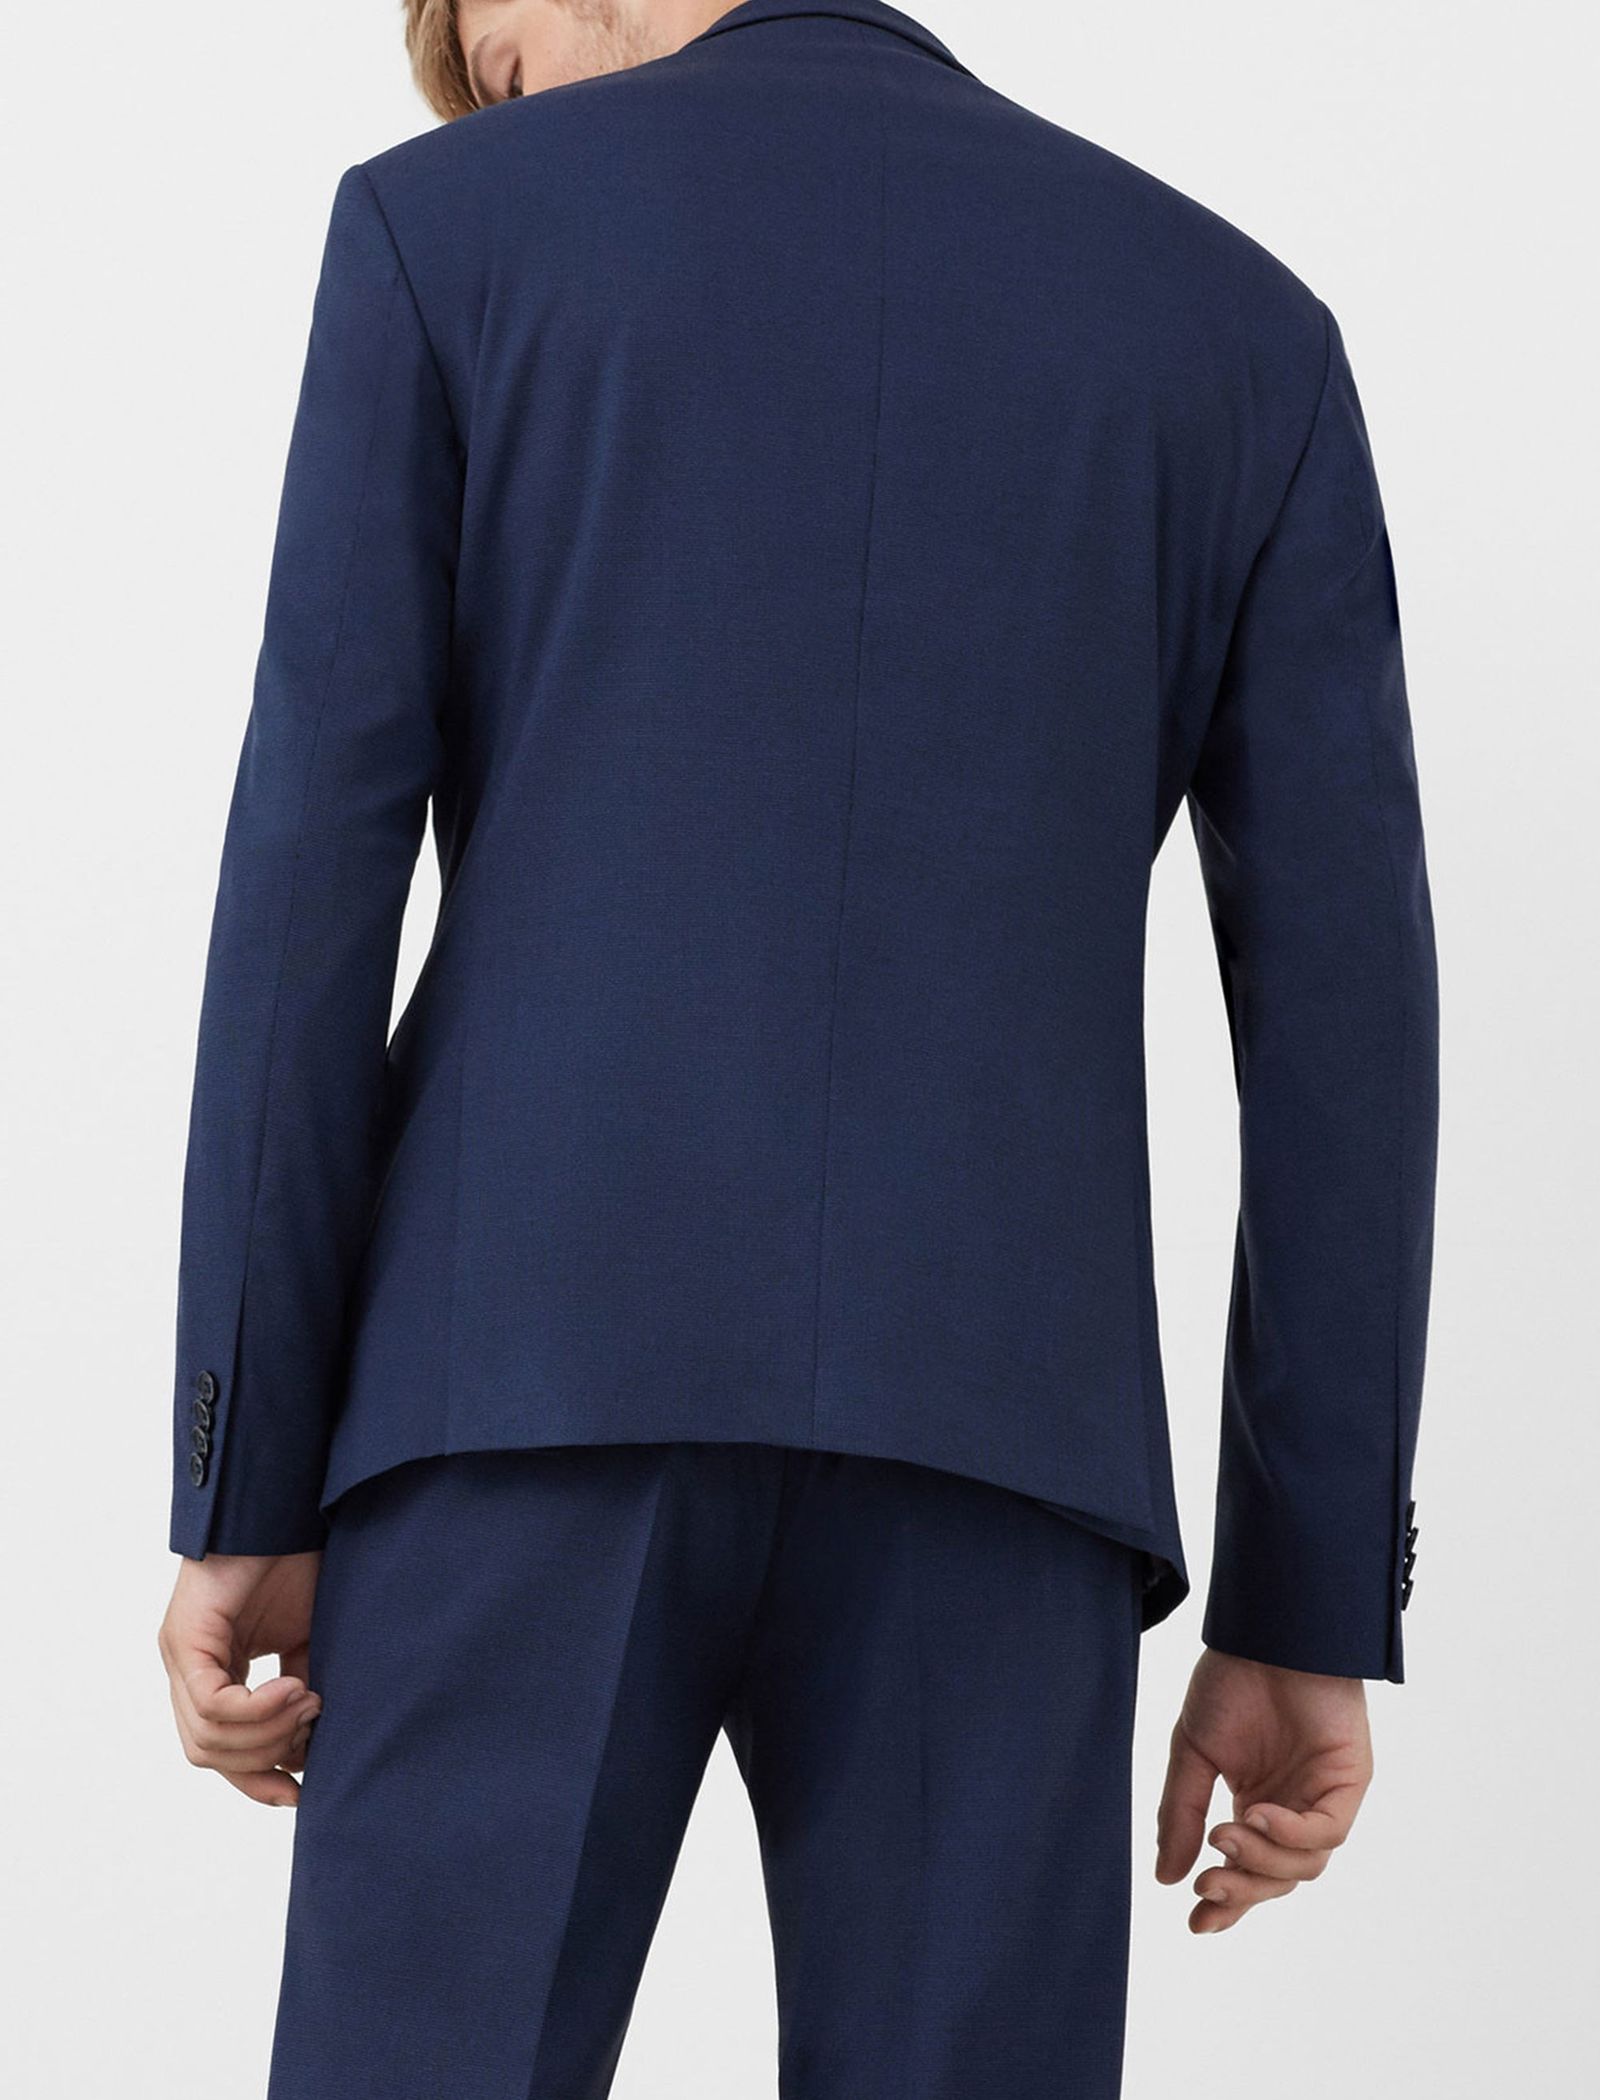 کت تک رسمی مردانه - مانگو - سرمه اي - 4